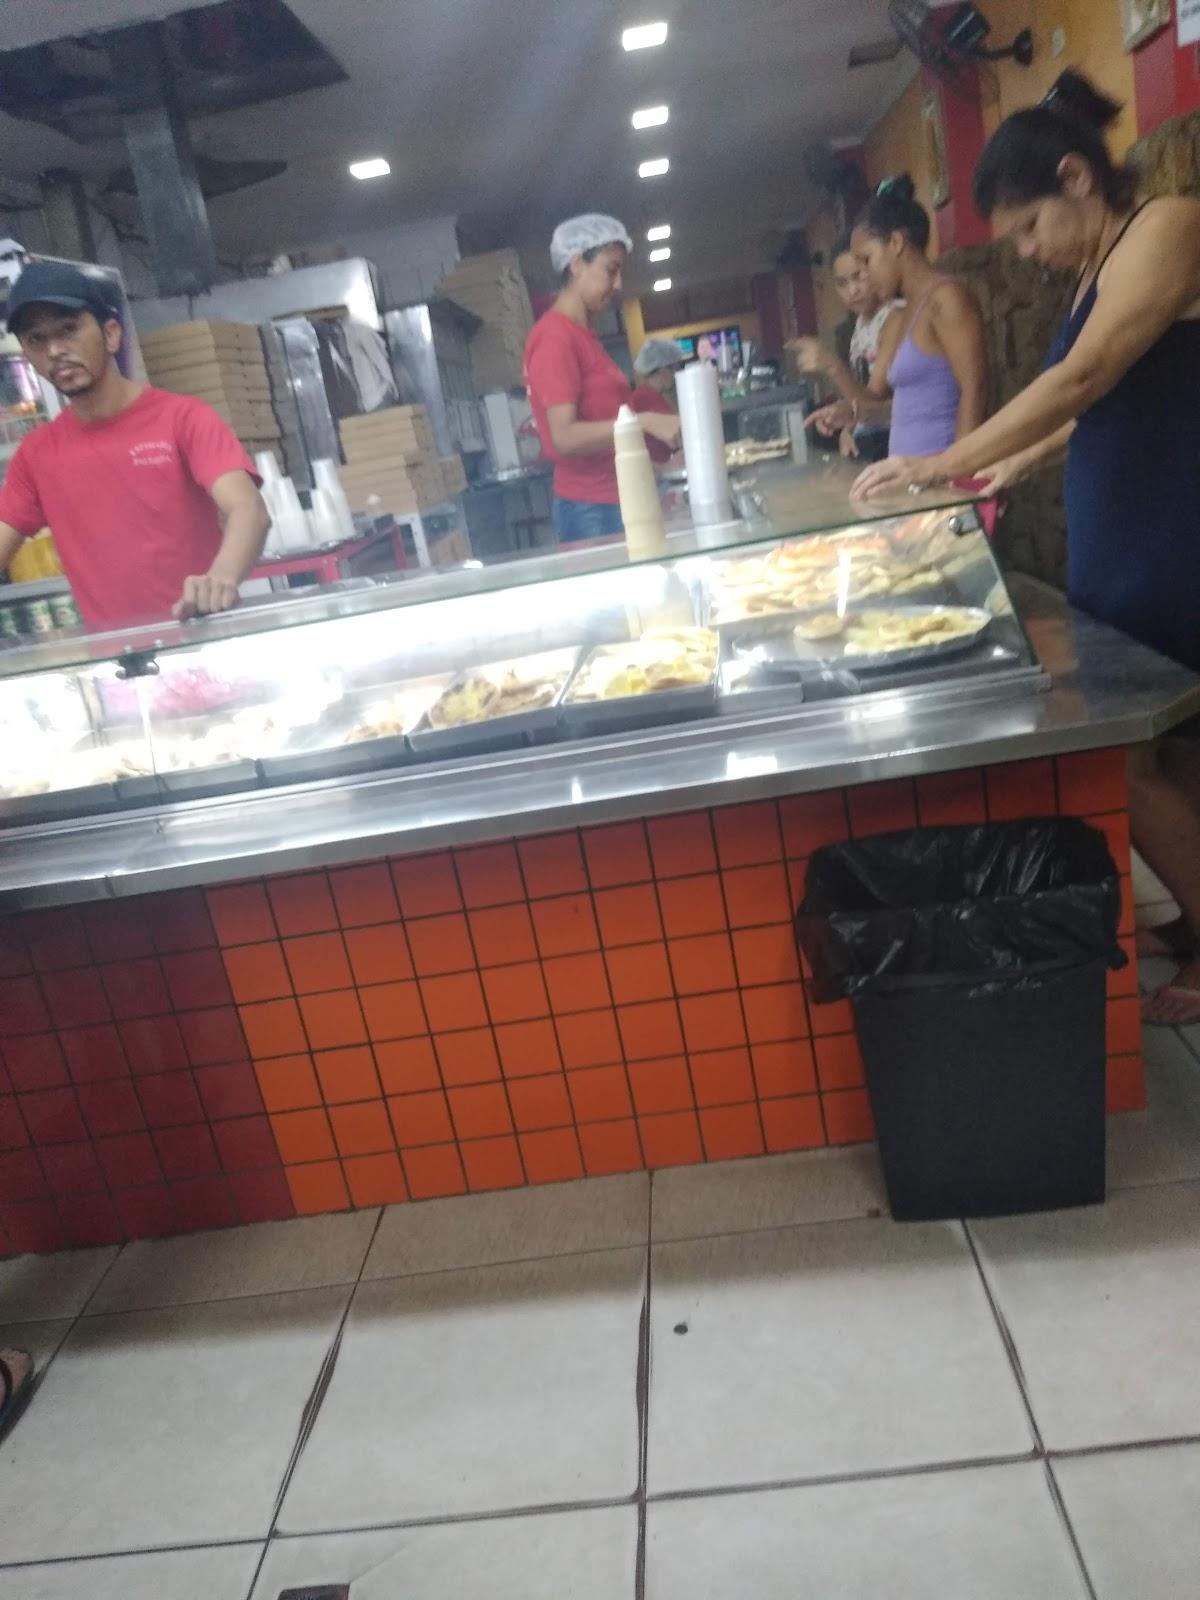 Pizzaria Paulista - Bairro da Cancela Preta - RJ - Divulga no